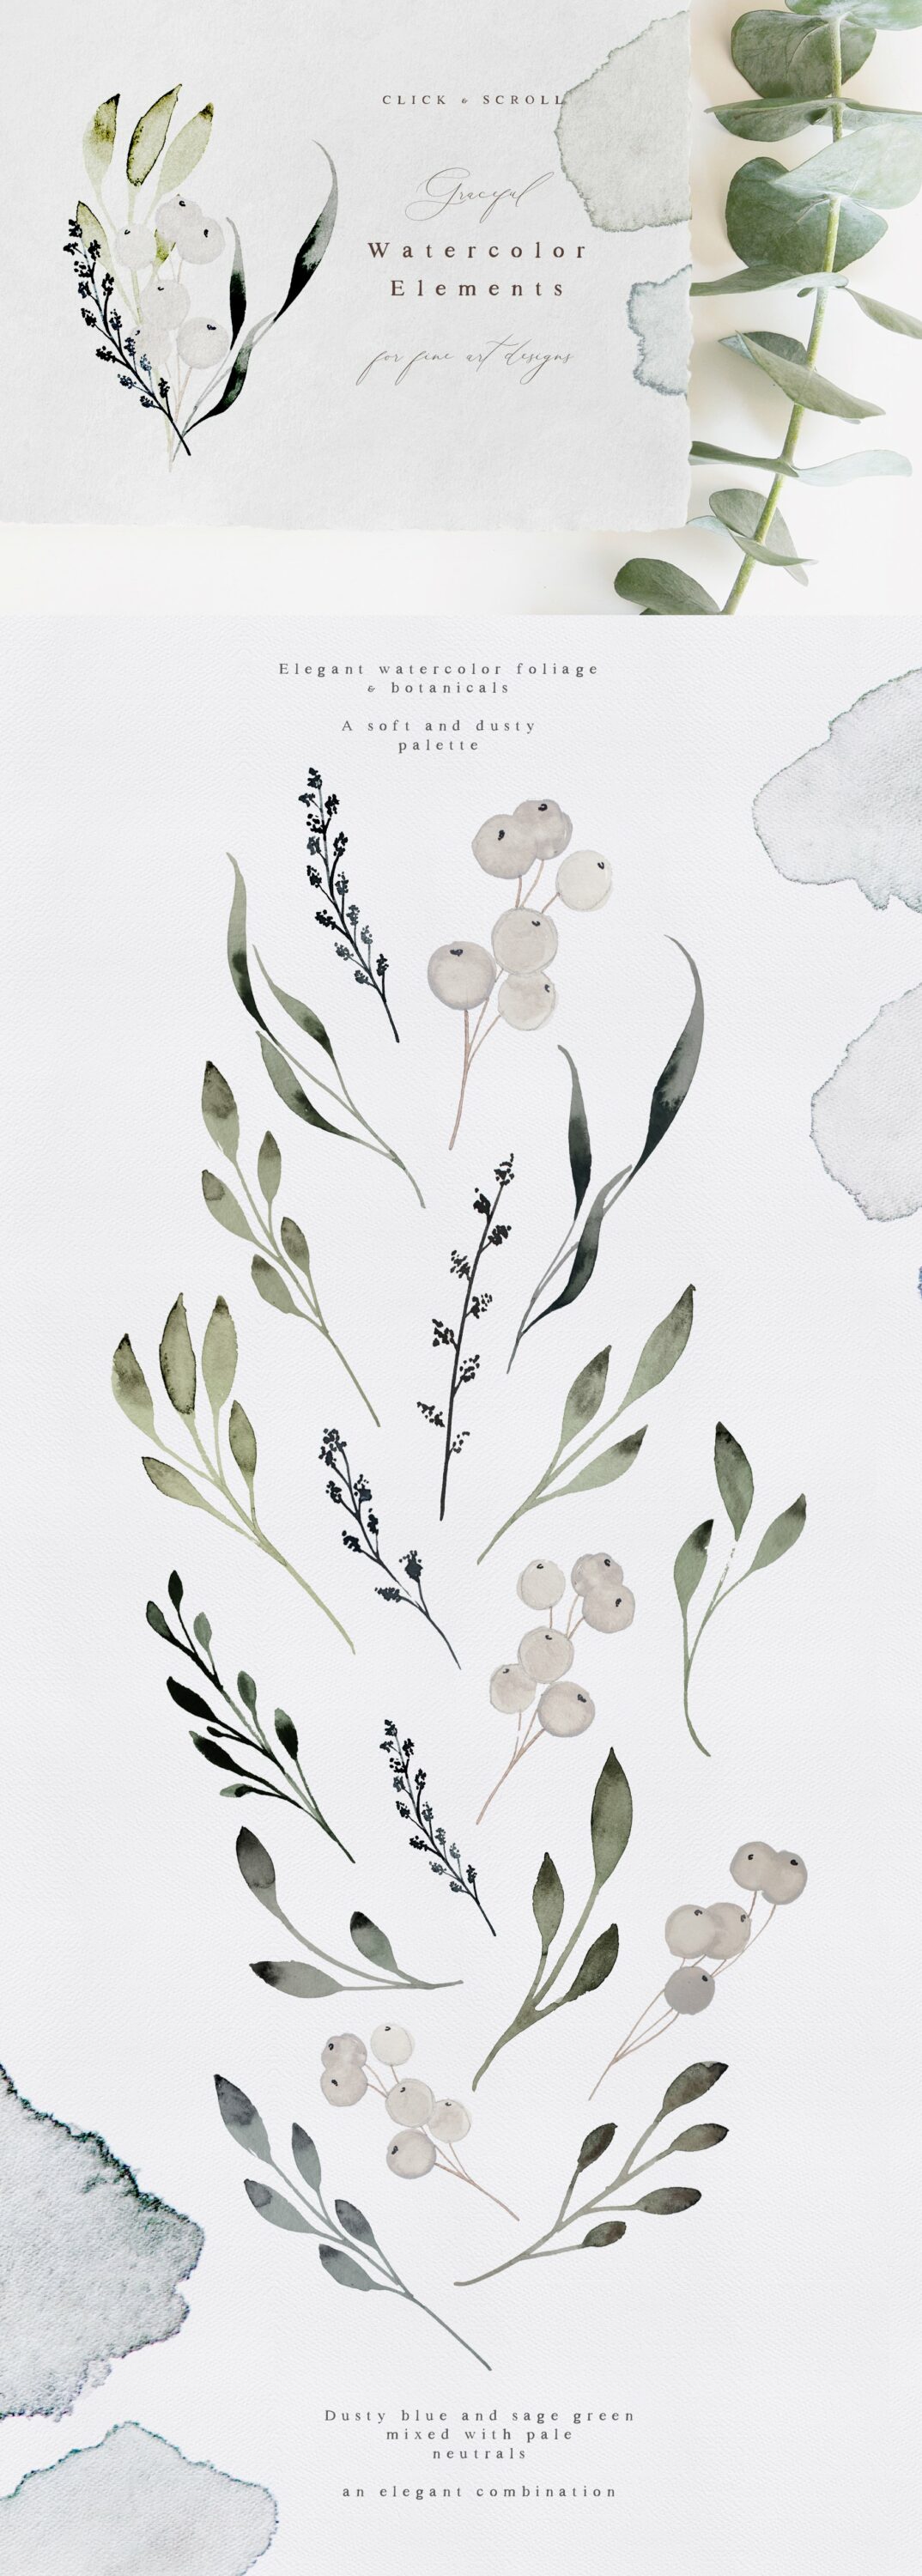 Hazel - Artisan Flowers & Watercolor.